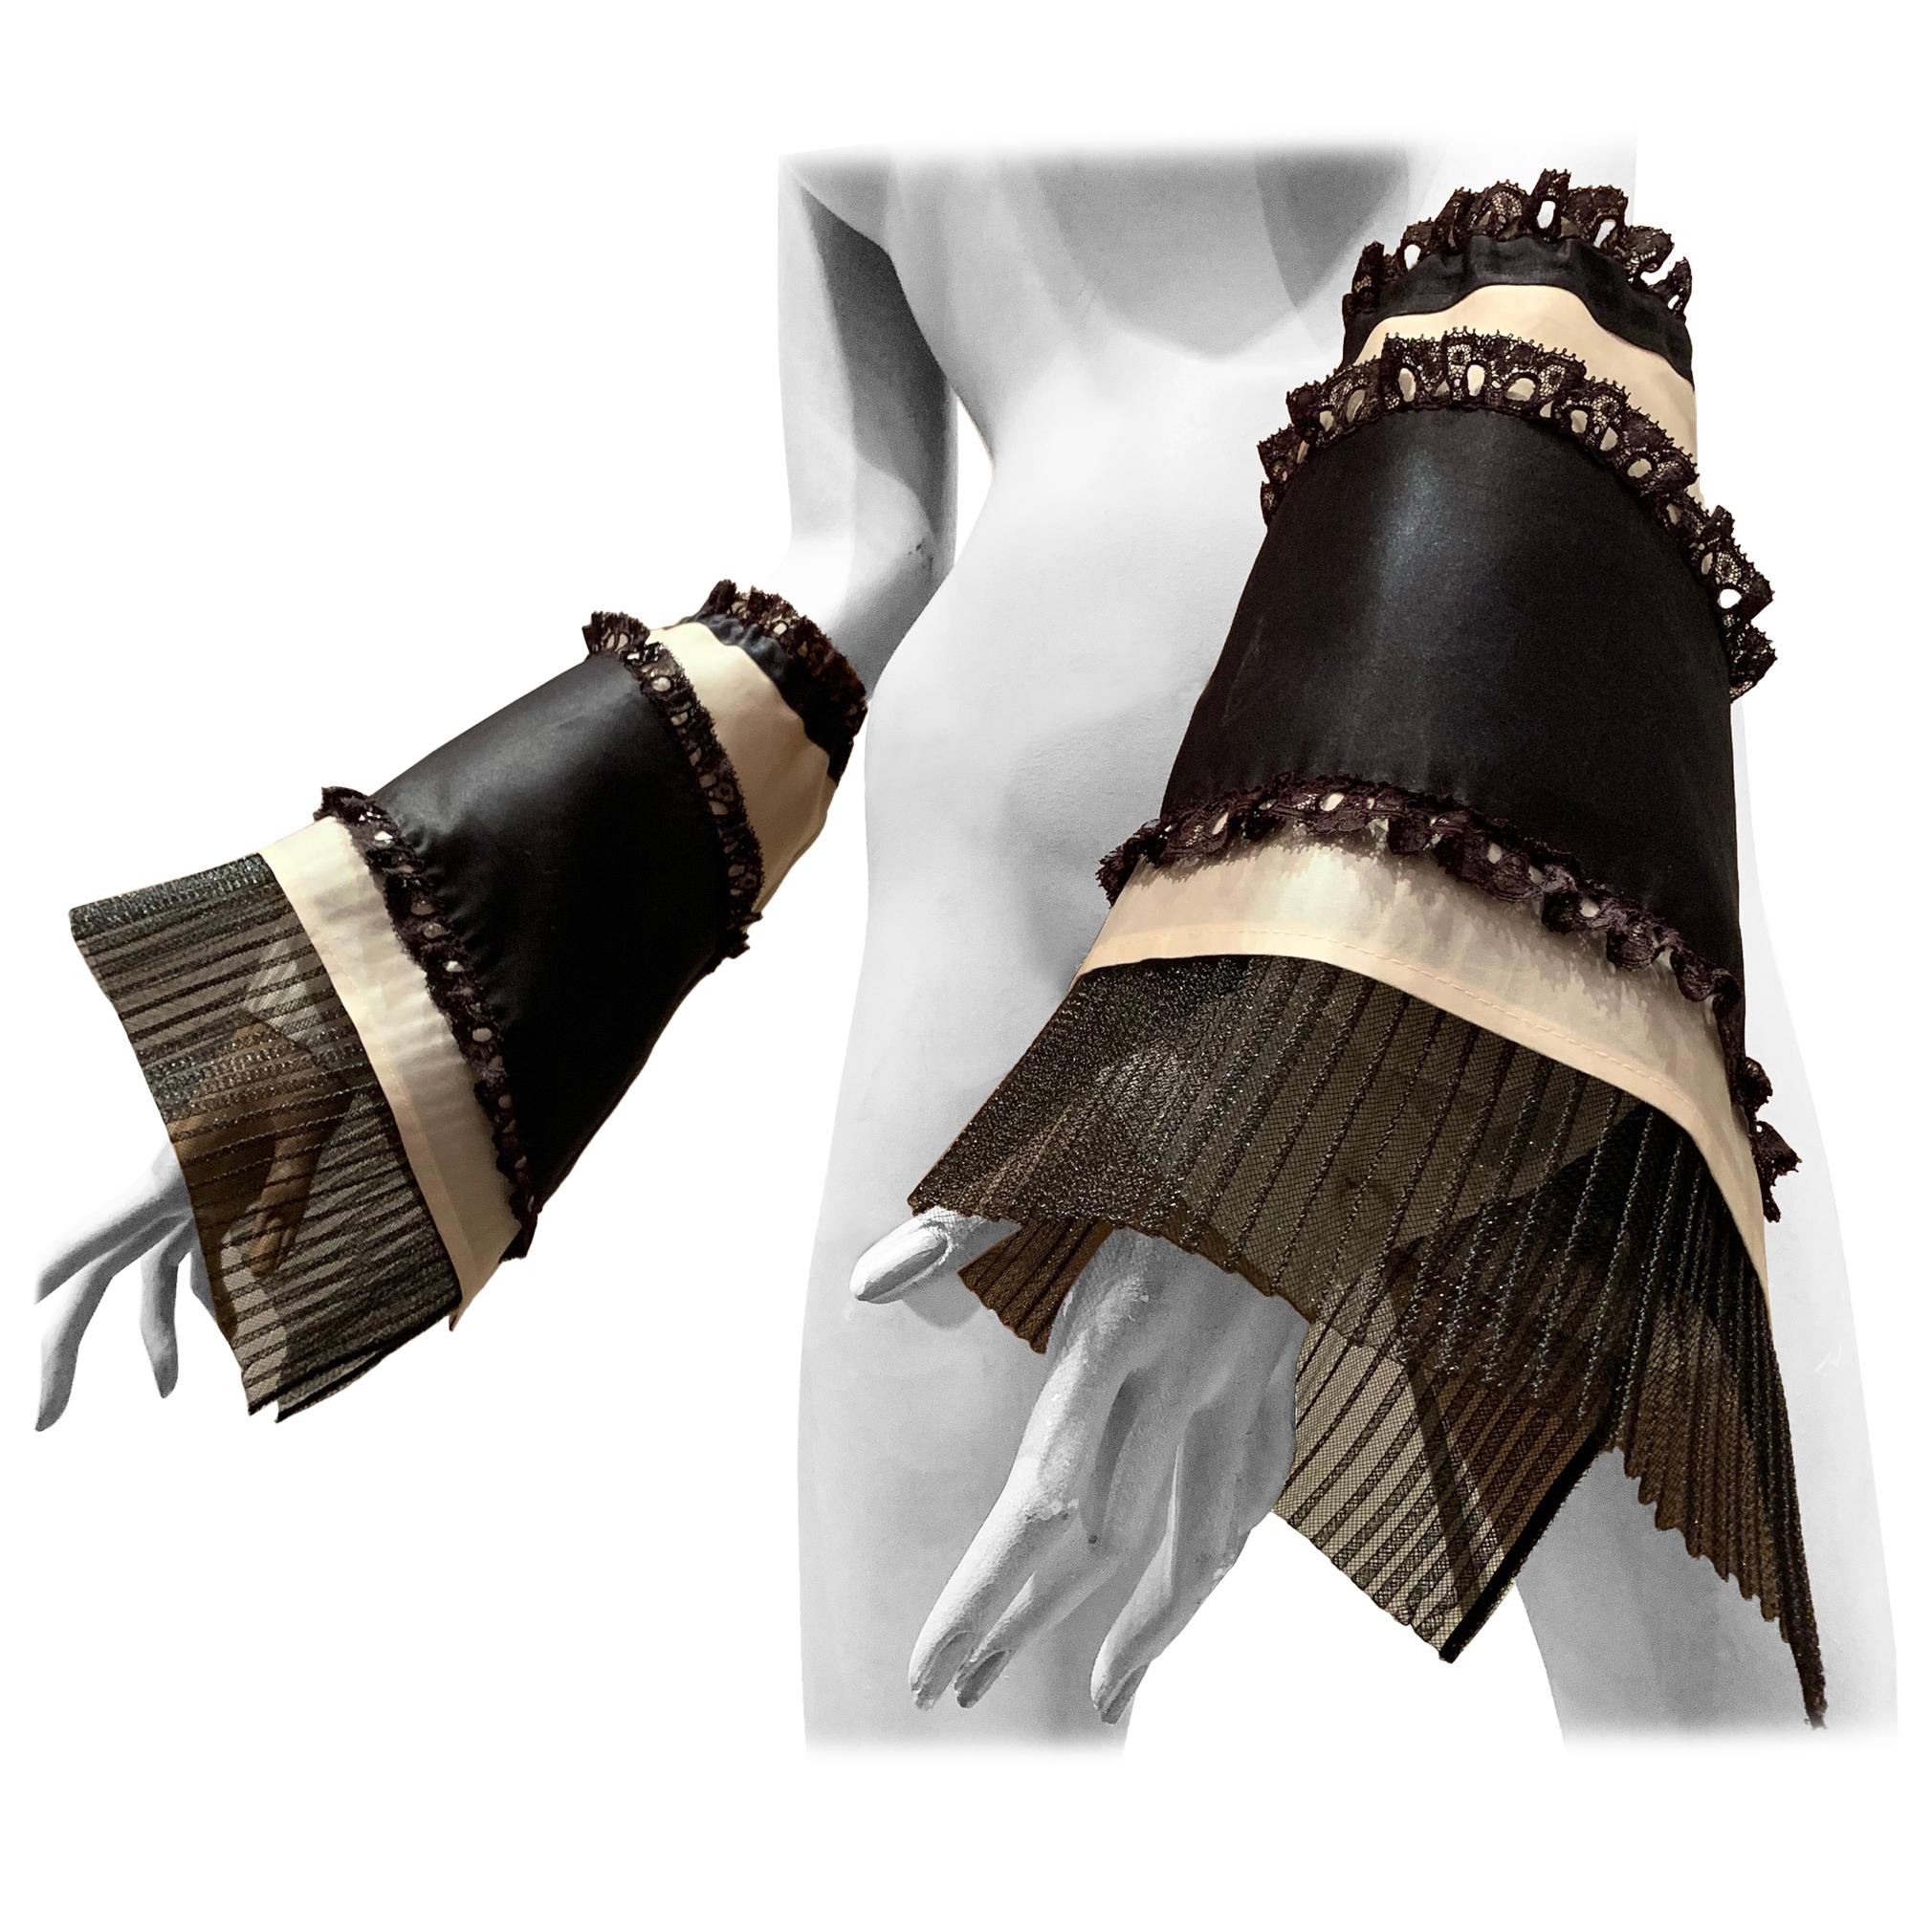 Créations de torse Gauntlets à manches chemise noirs et blancs avec volants en organza et dentelle